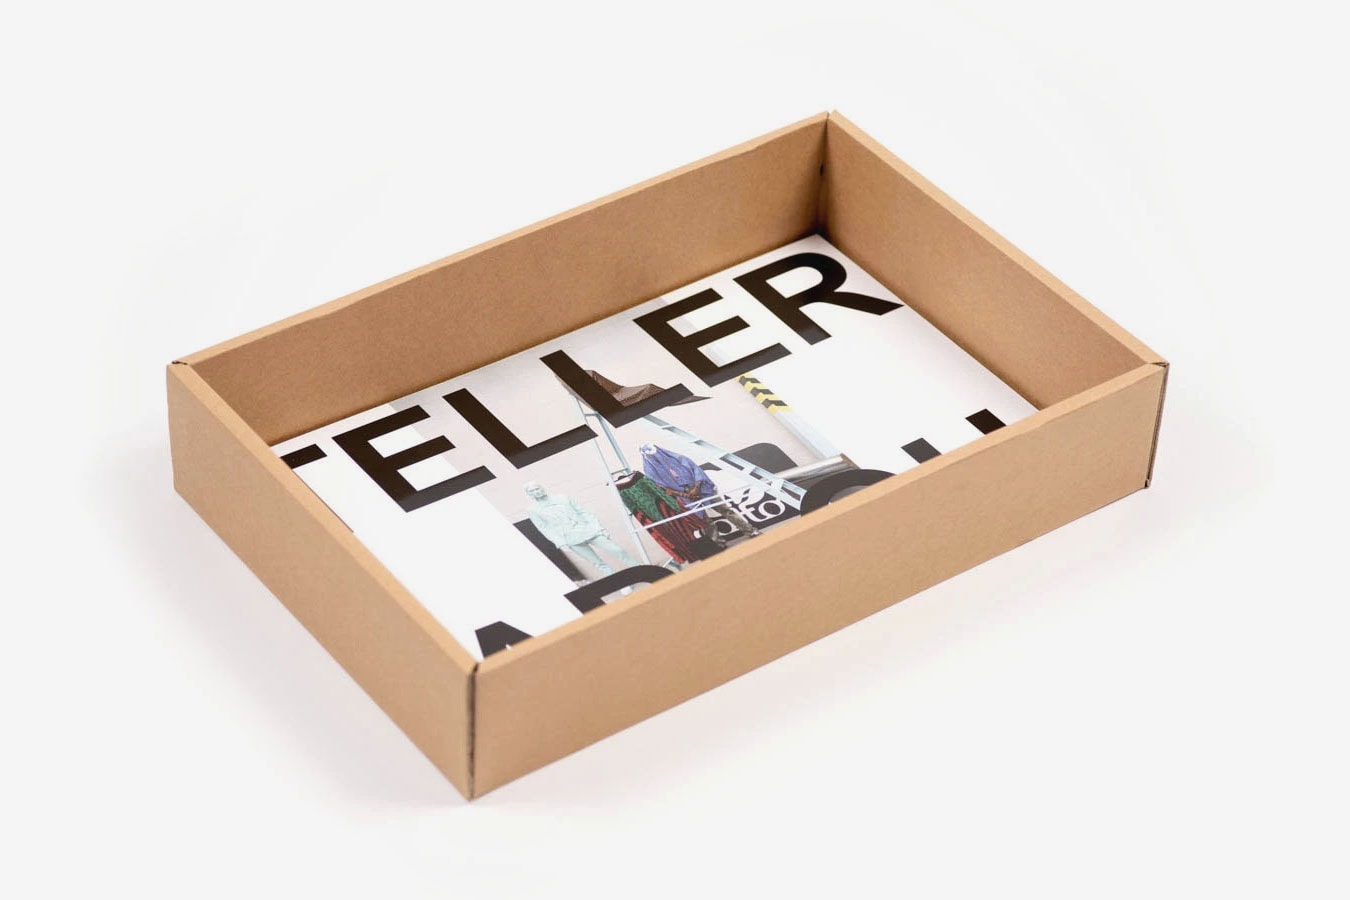 ヴァージル・アブロー × ユルゲン・テラーによる限定写真集が発売 juergen teller virgil abloh figures of speech photography book release 